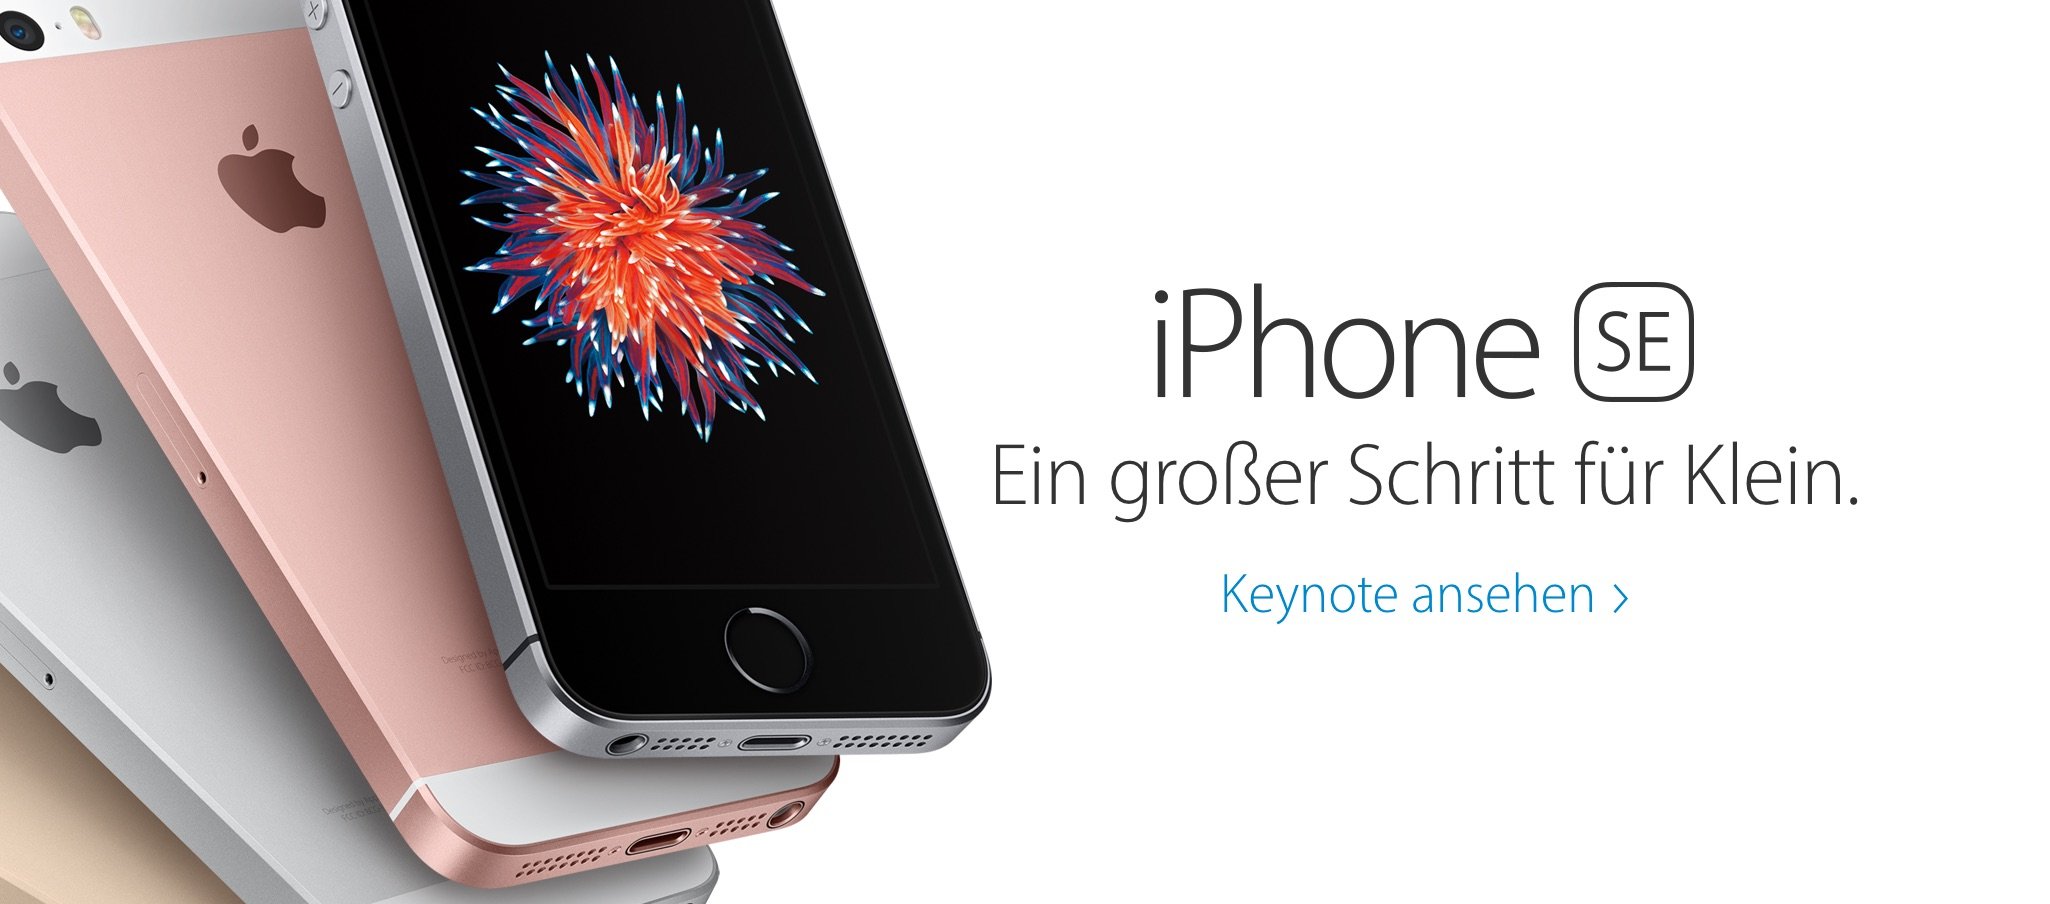 Euro Preise Deutschland für iPhone SE, iPad Pro, Apple Watch 2